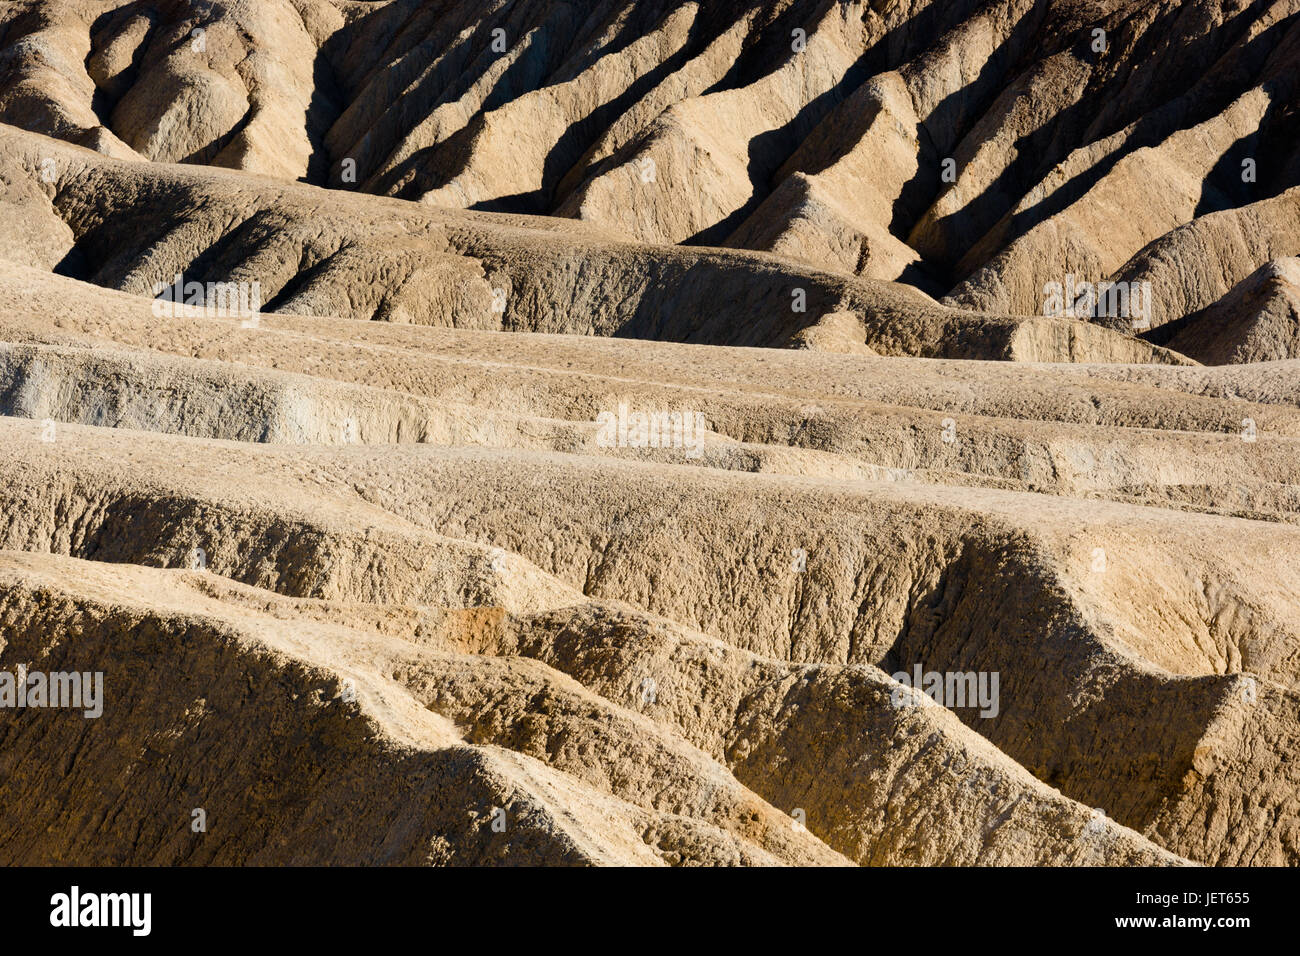 USA, Californie, la Vallée de la mort est une vallée désertique située dans l'est de la Californie. C'est la région la plus basse, la plus sèche et la plus chaude d'Amérique du Nord. Vue sur Zabriskie point. Banque D'Images